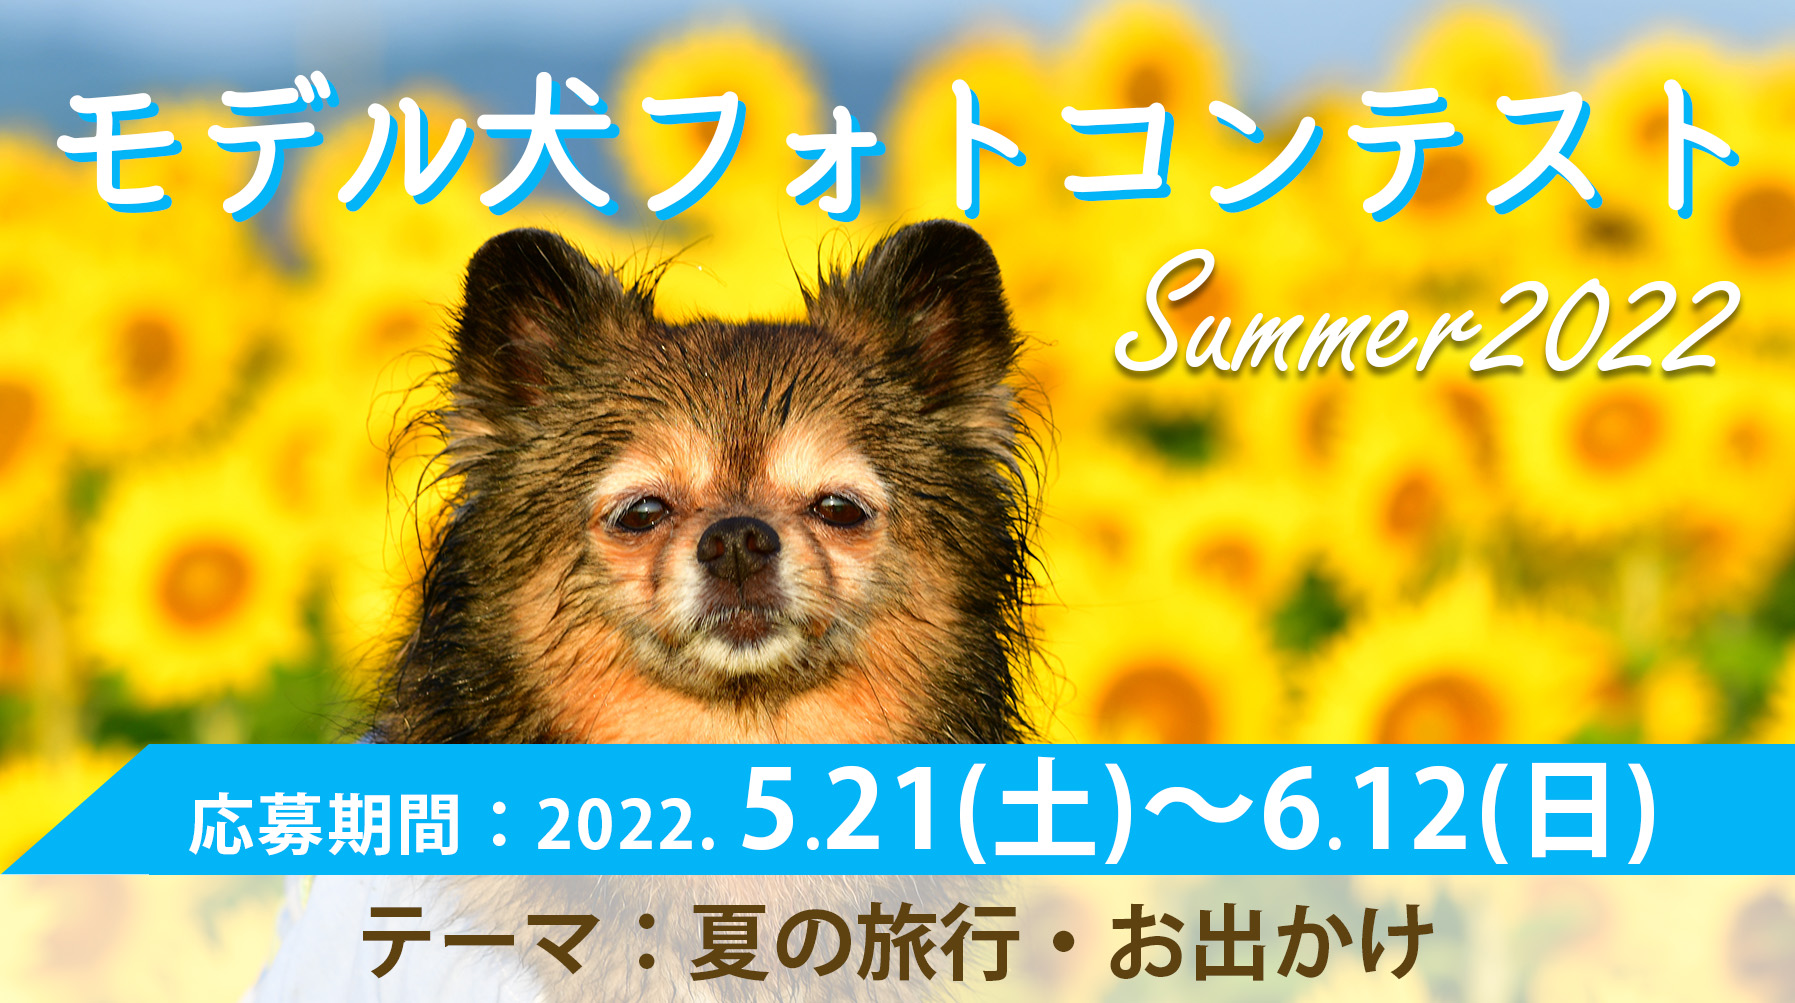 イヌトミィ モデル犬フォトコンテスト Summer 2022